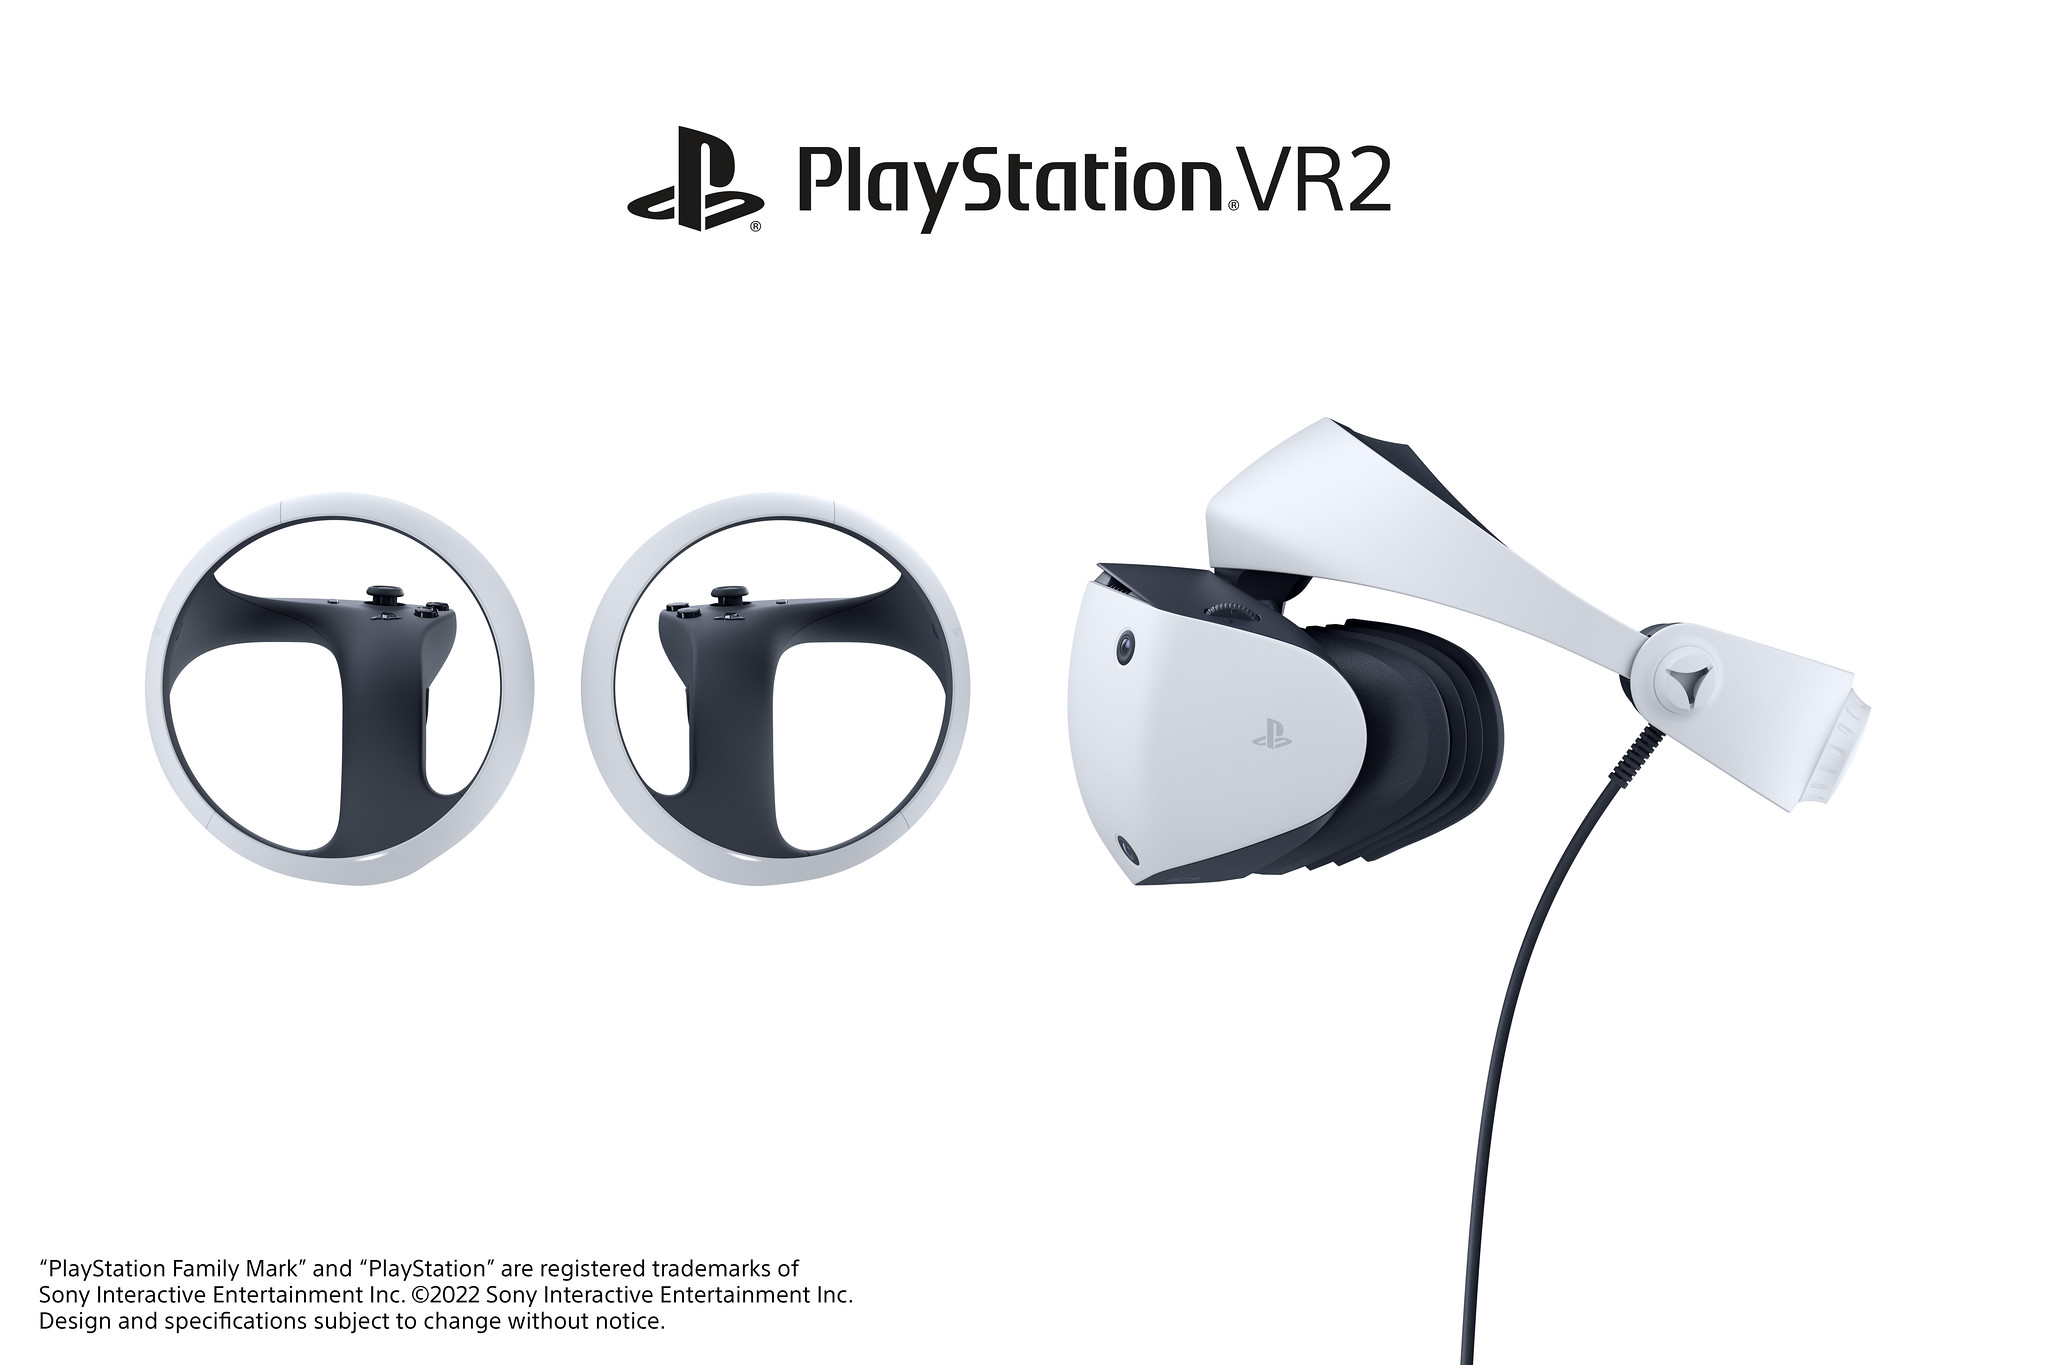 Le casque PlayStation VR2 de Sony pour la PS5 est enfin dévoilé - Numerama